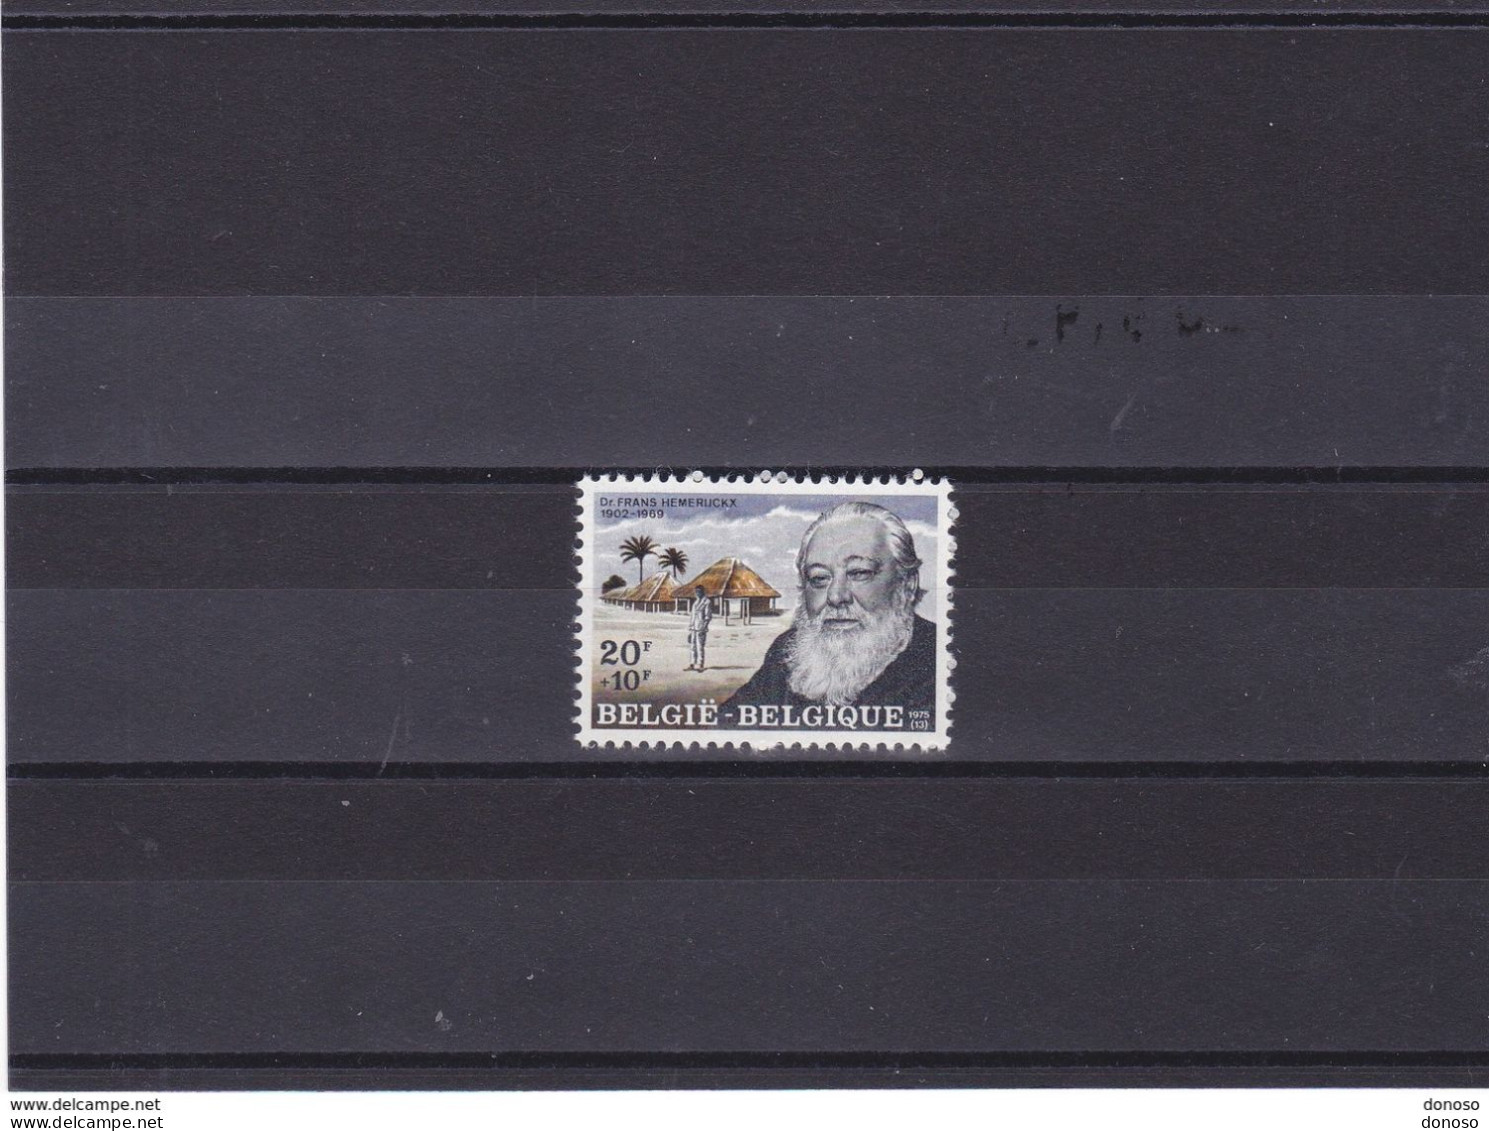 BELGIQUE 1975 HEMERJICKX Yvert 1773, Michel 1830 NEUF** MNH - Unused Stamps